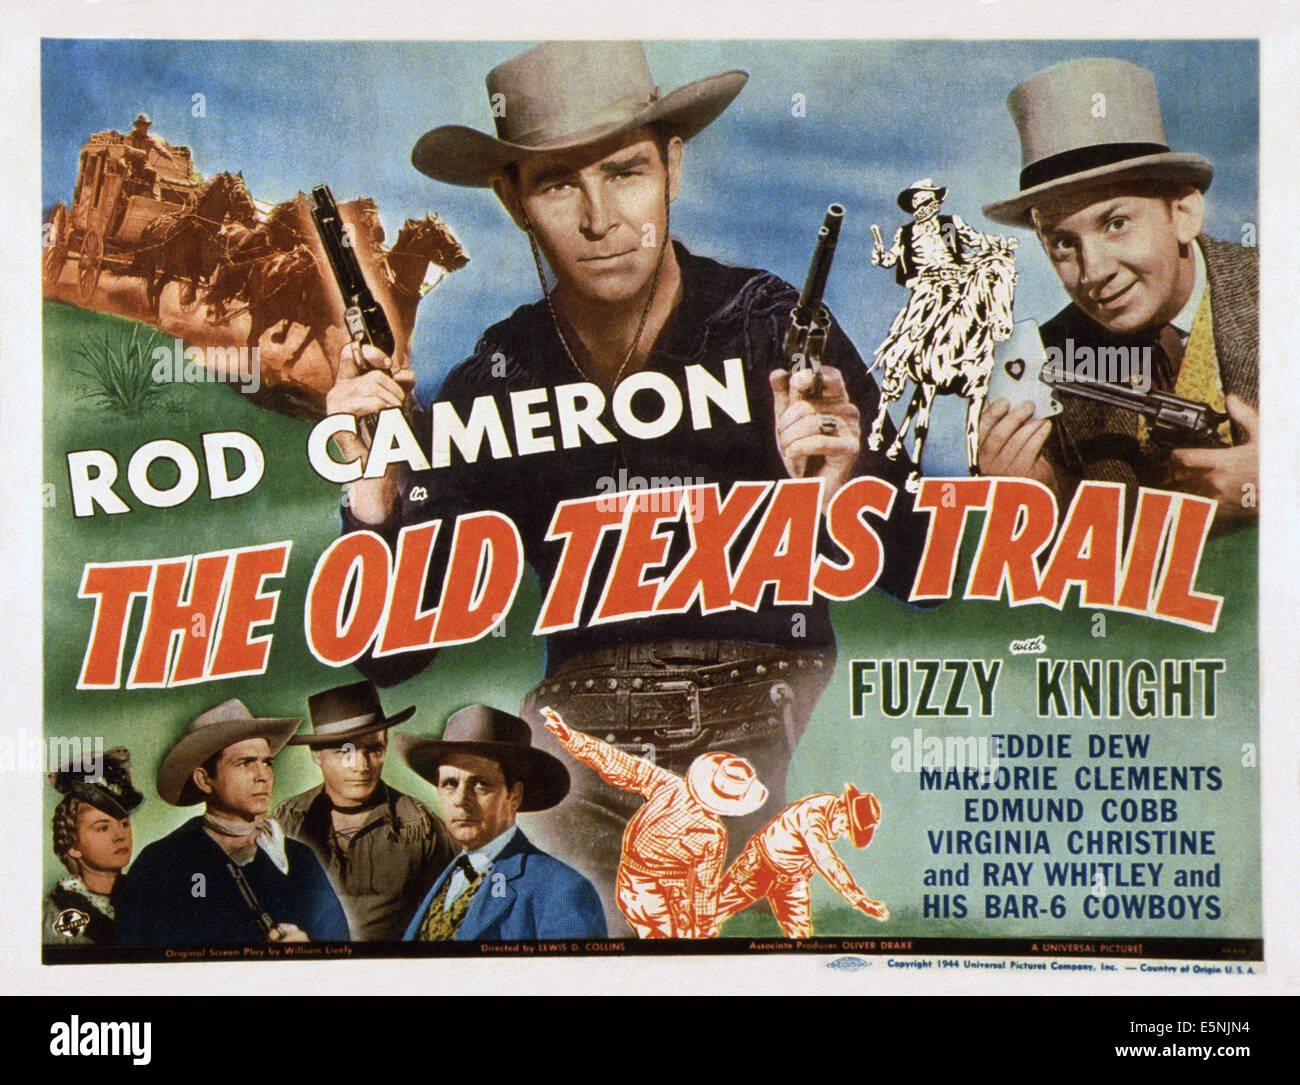 L'ancien sentier du Texas, US lobbycard, Rod Cameron (centre), Fuzzy Knight (En haut à droite), 1944 Banque D'Images